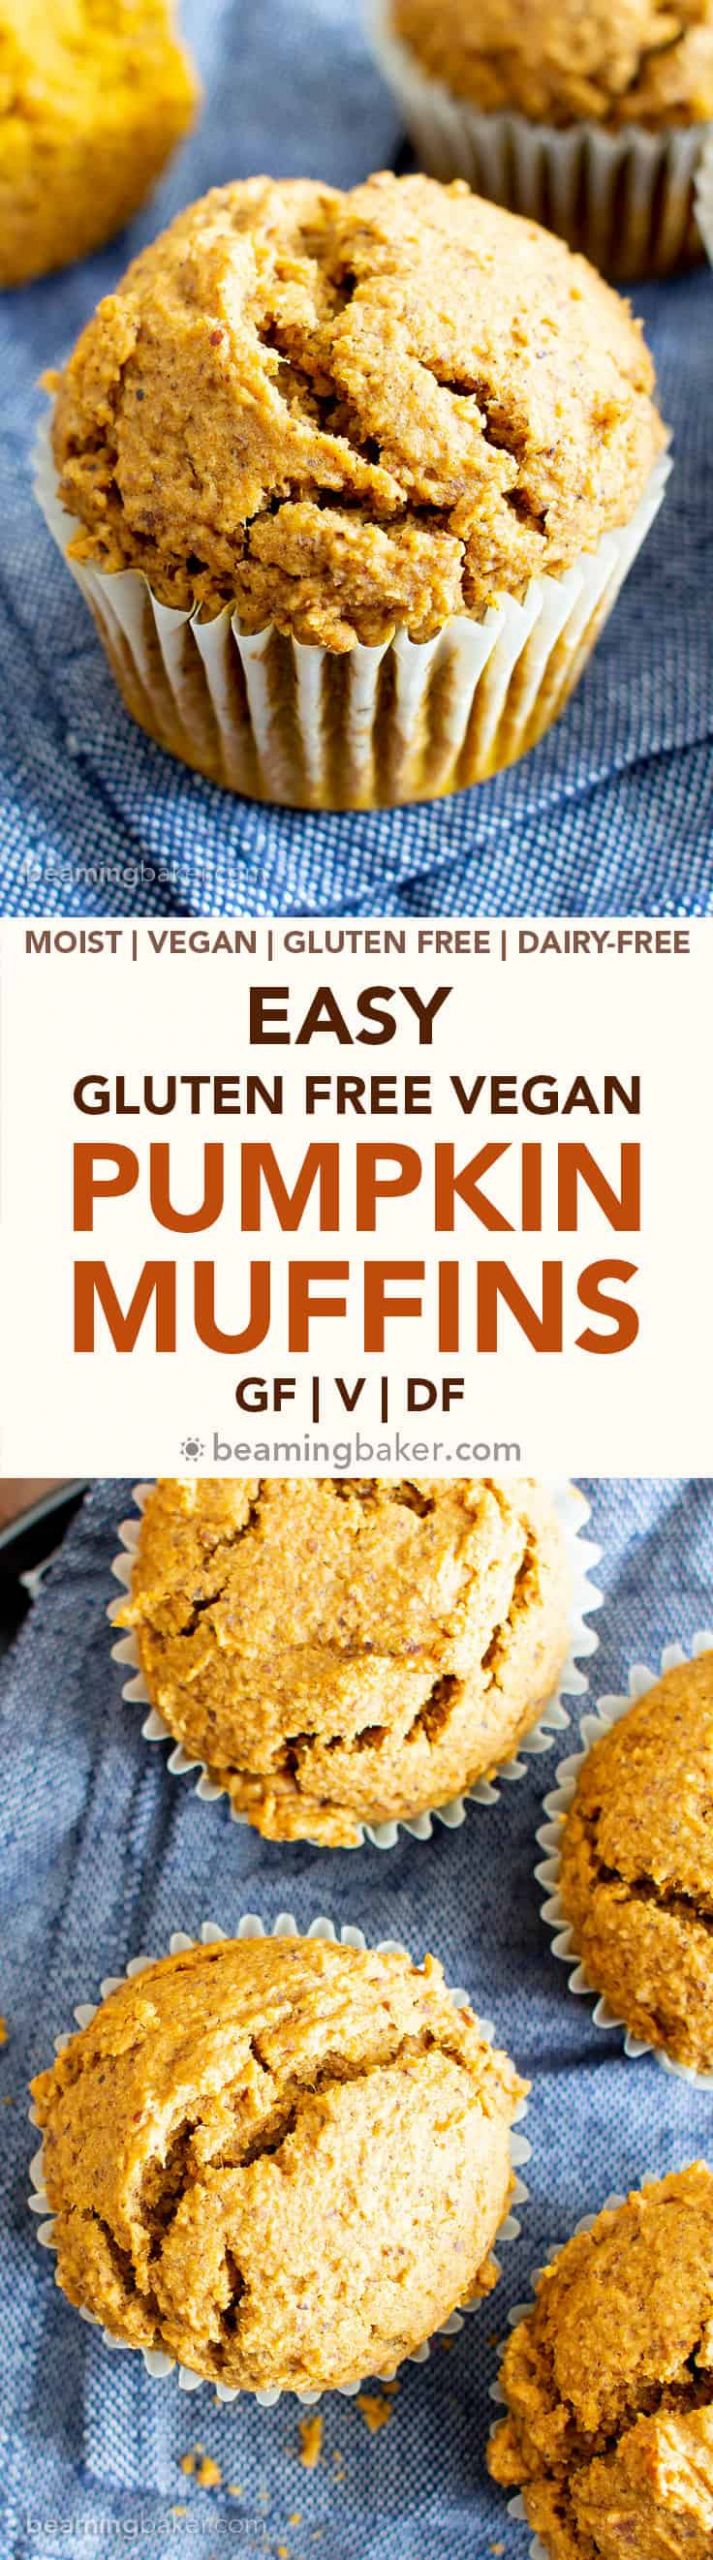 Gluten Free Muffins Recipes
 Easy Vegan Gluten Free Pumpkin Muffins Recipe GF V